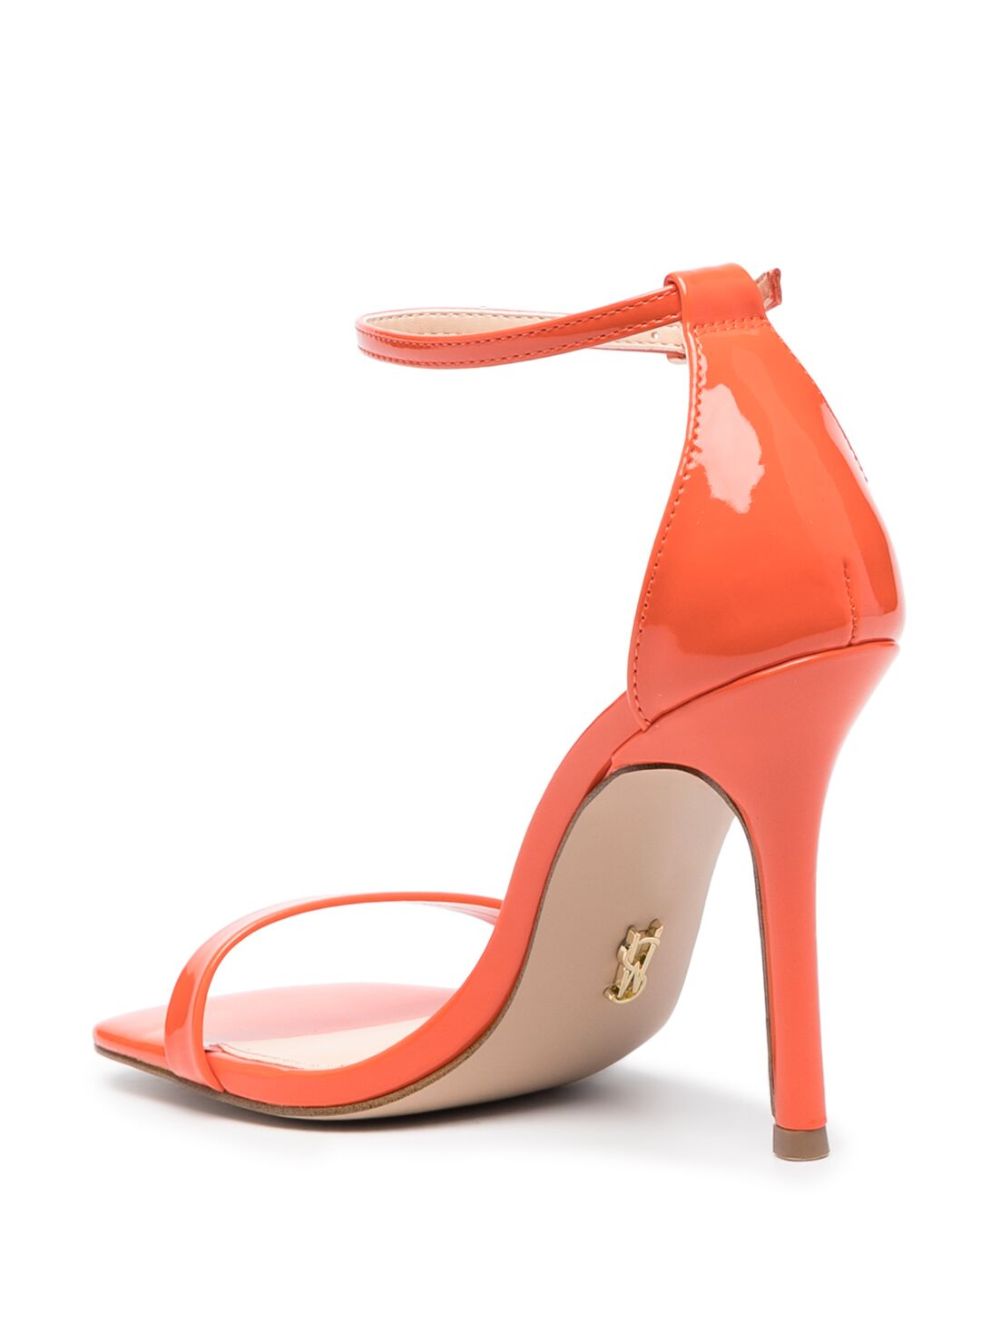 Sandales femme orange